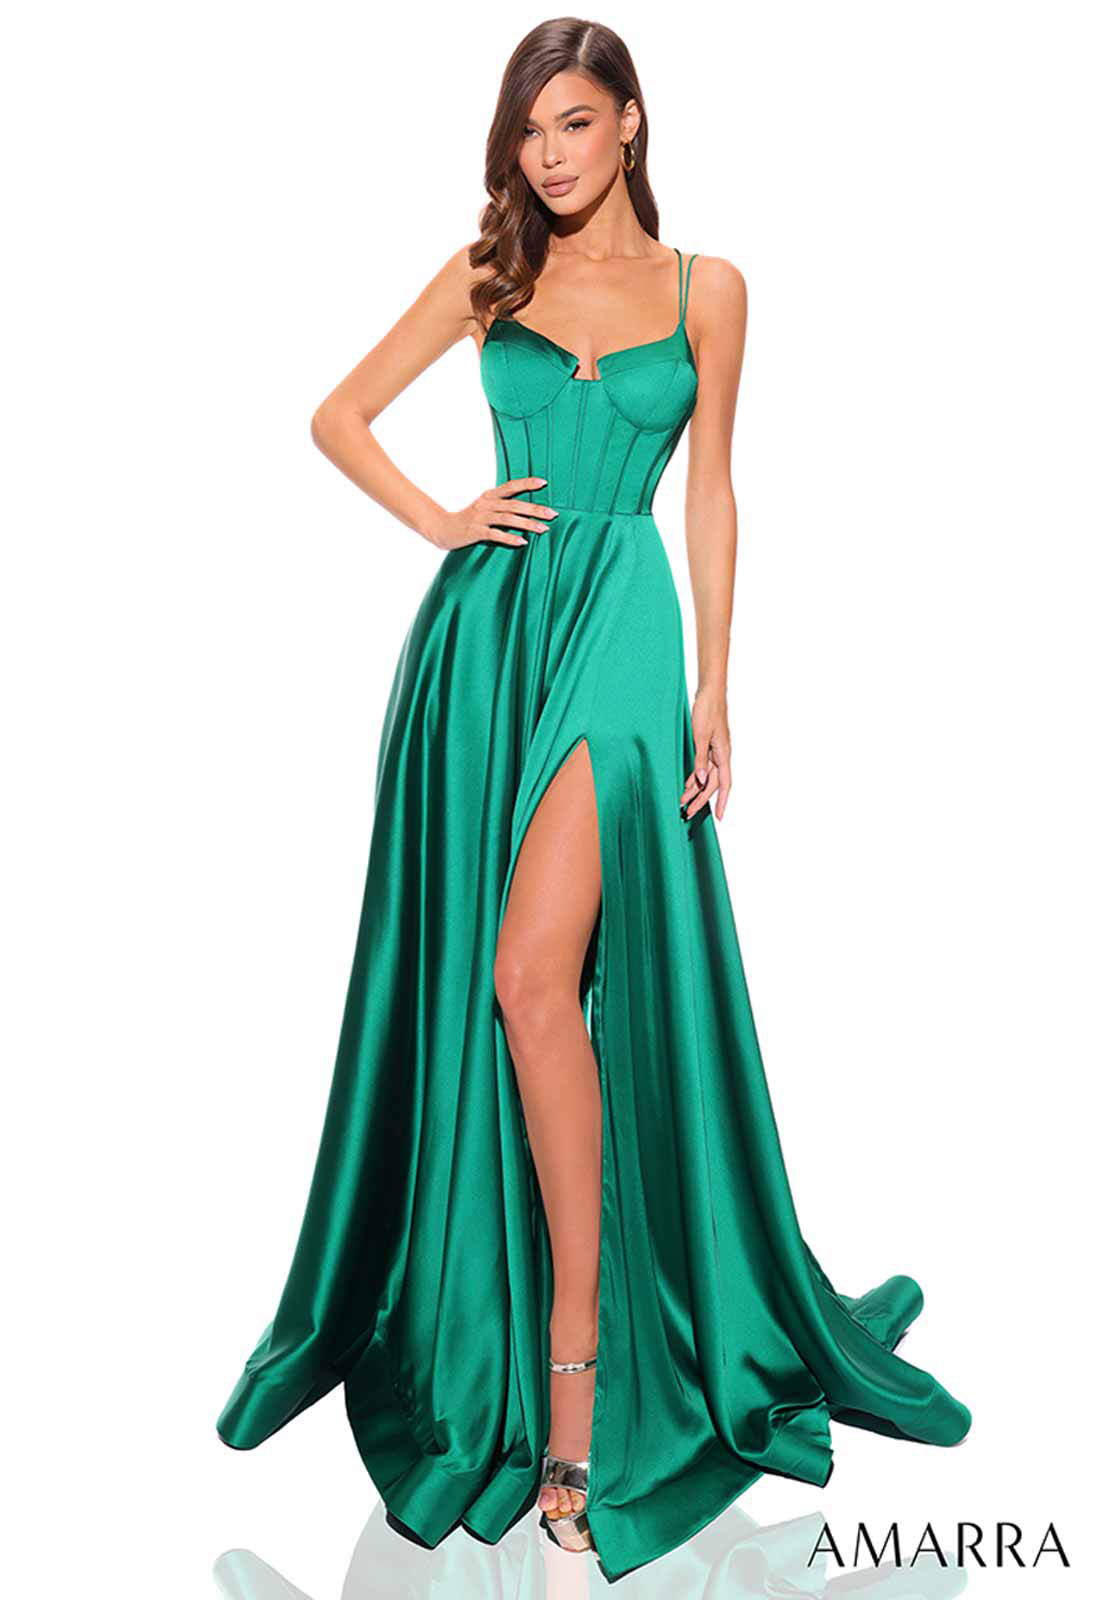 Amarra Emerald Zen Corset Dress